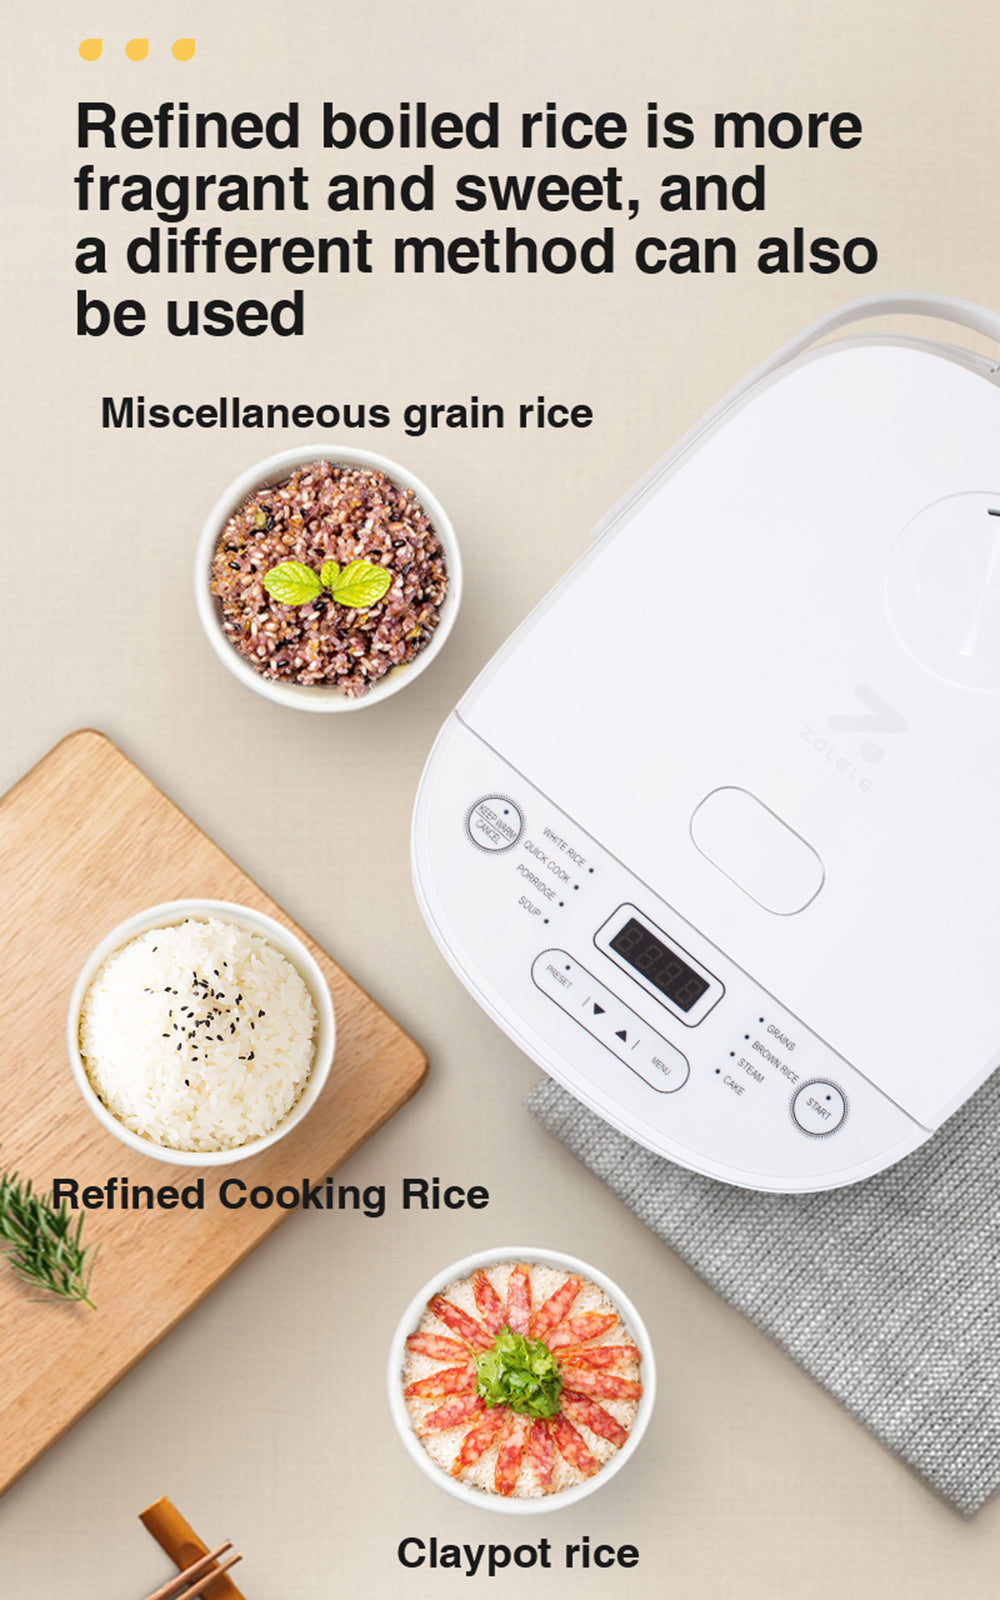 ZOLELE Smart Rice Cooker 5L ZB600 - White